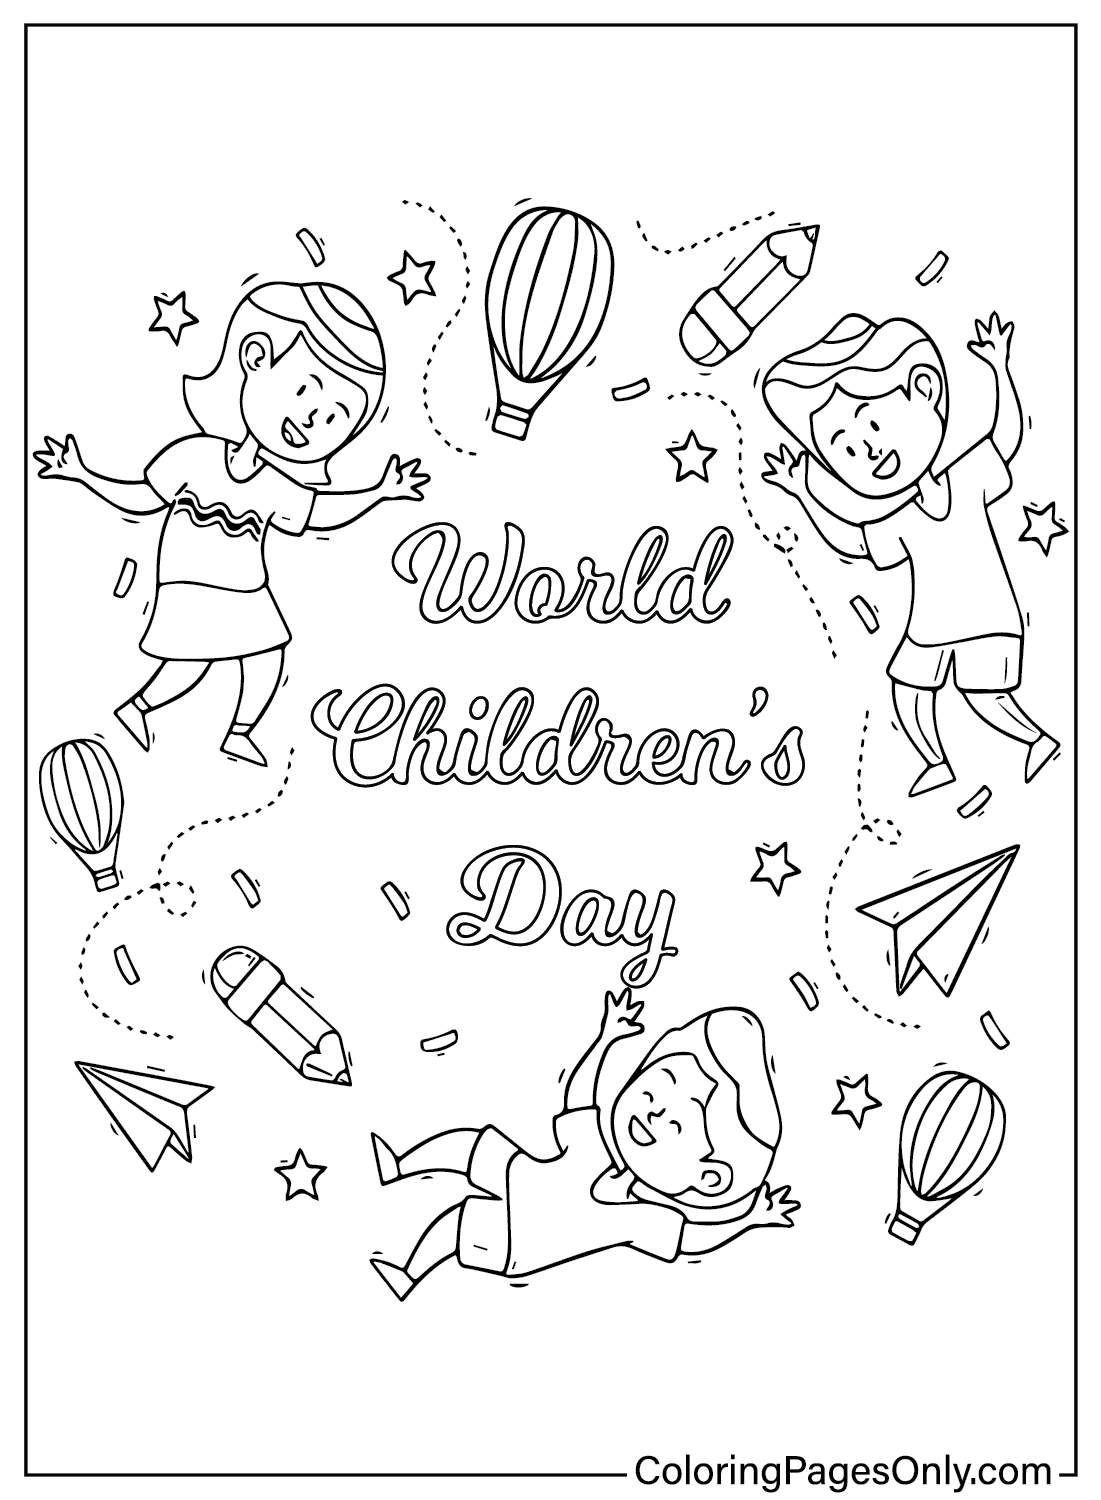 Farbseite zum Weltkindertag vom Kindertag